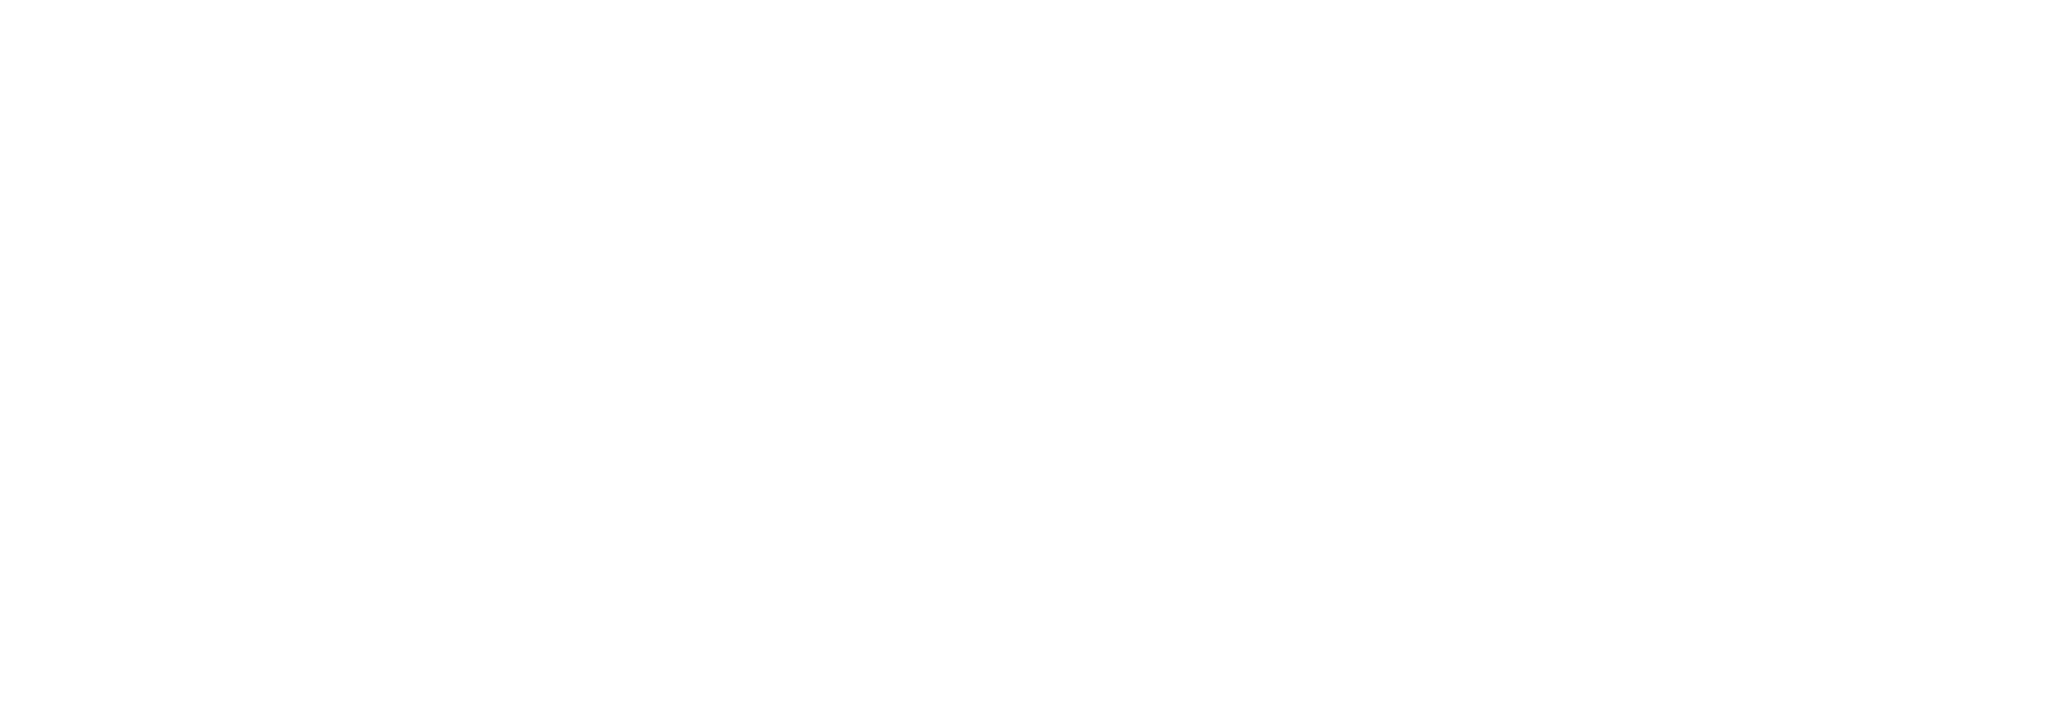 Insured Retirement Institute (IRI)